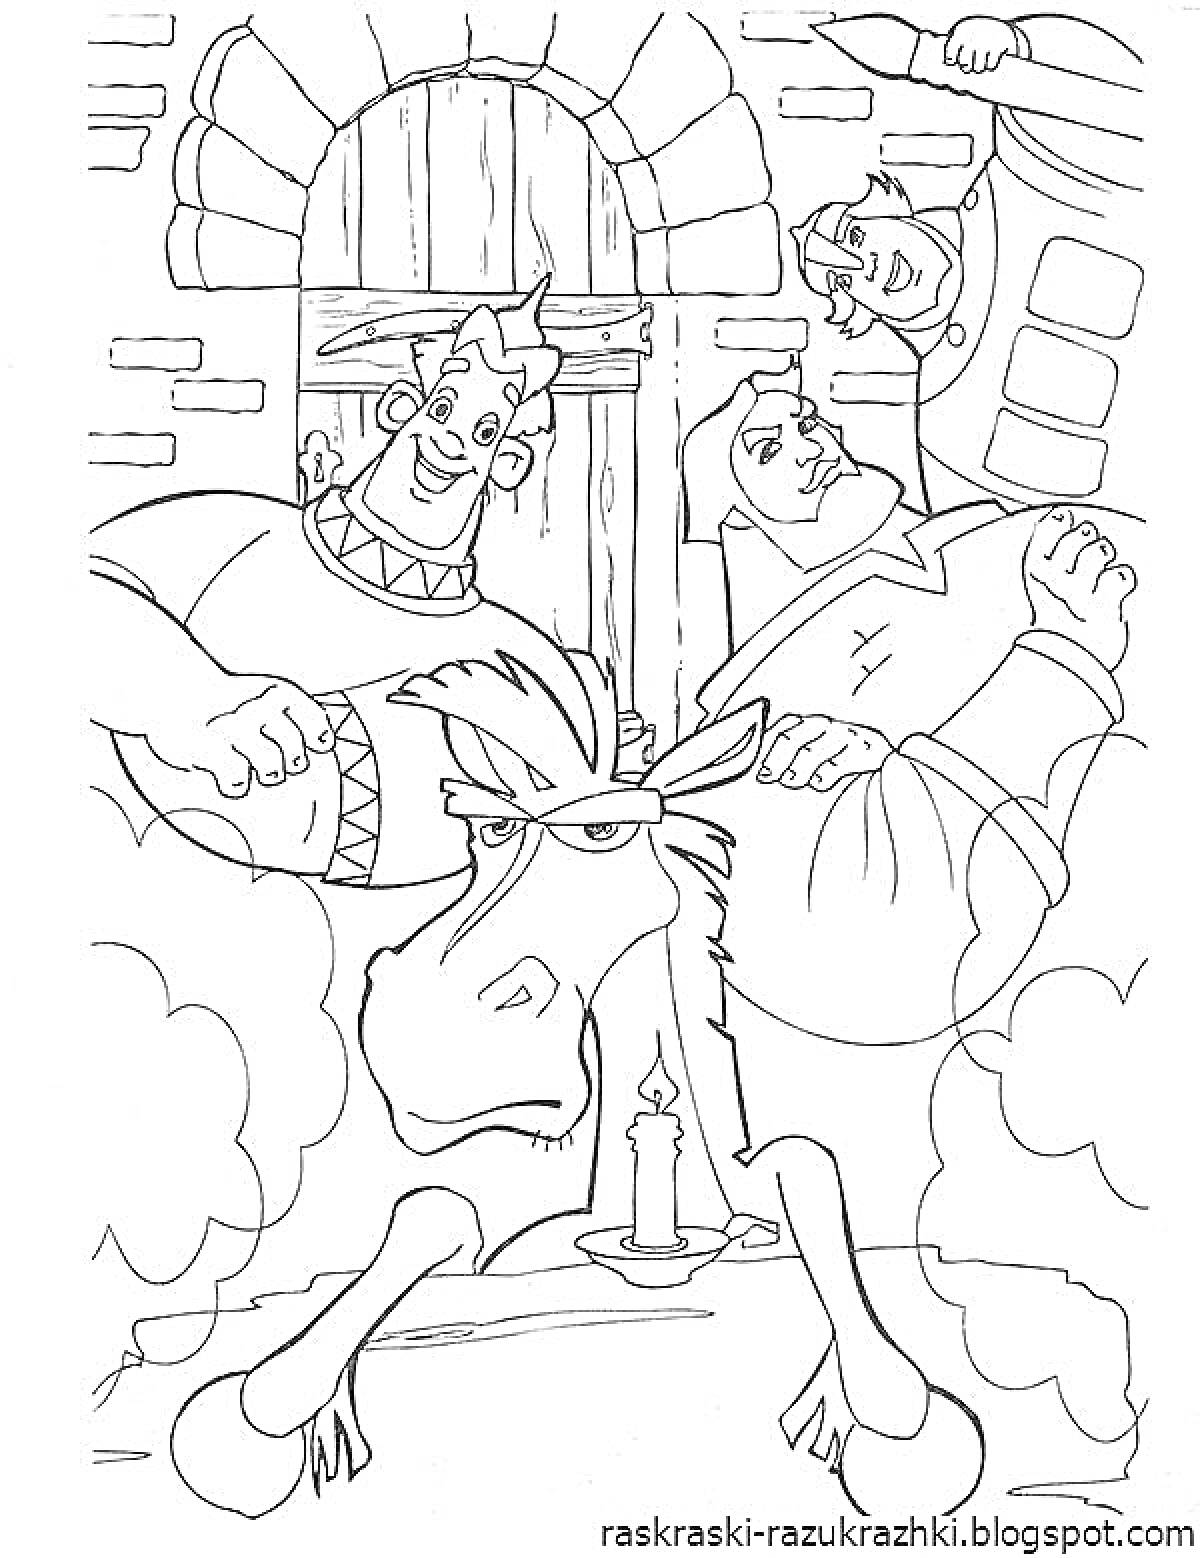 Раскраска Три богатыря с лошадью и горящей свечой у окна